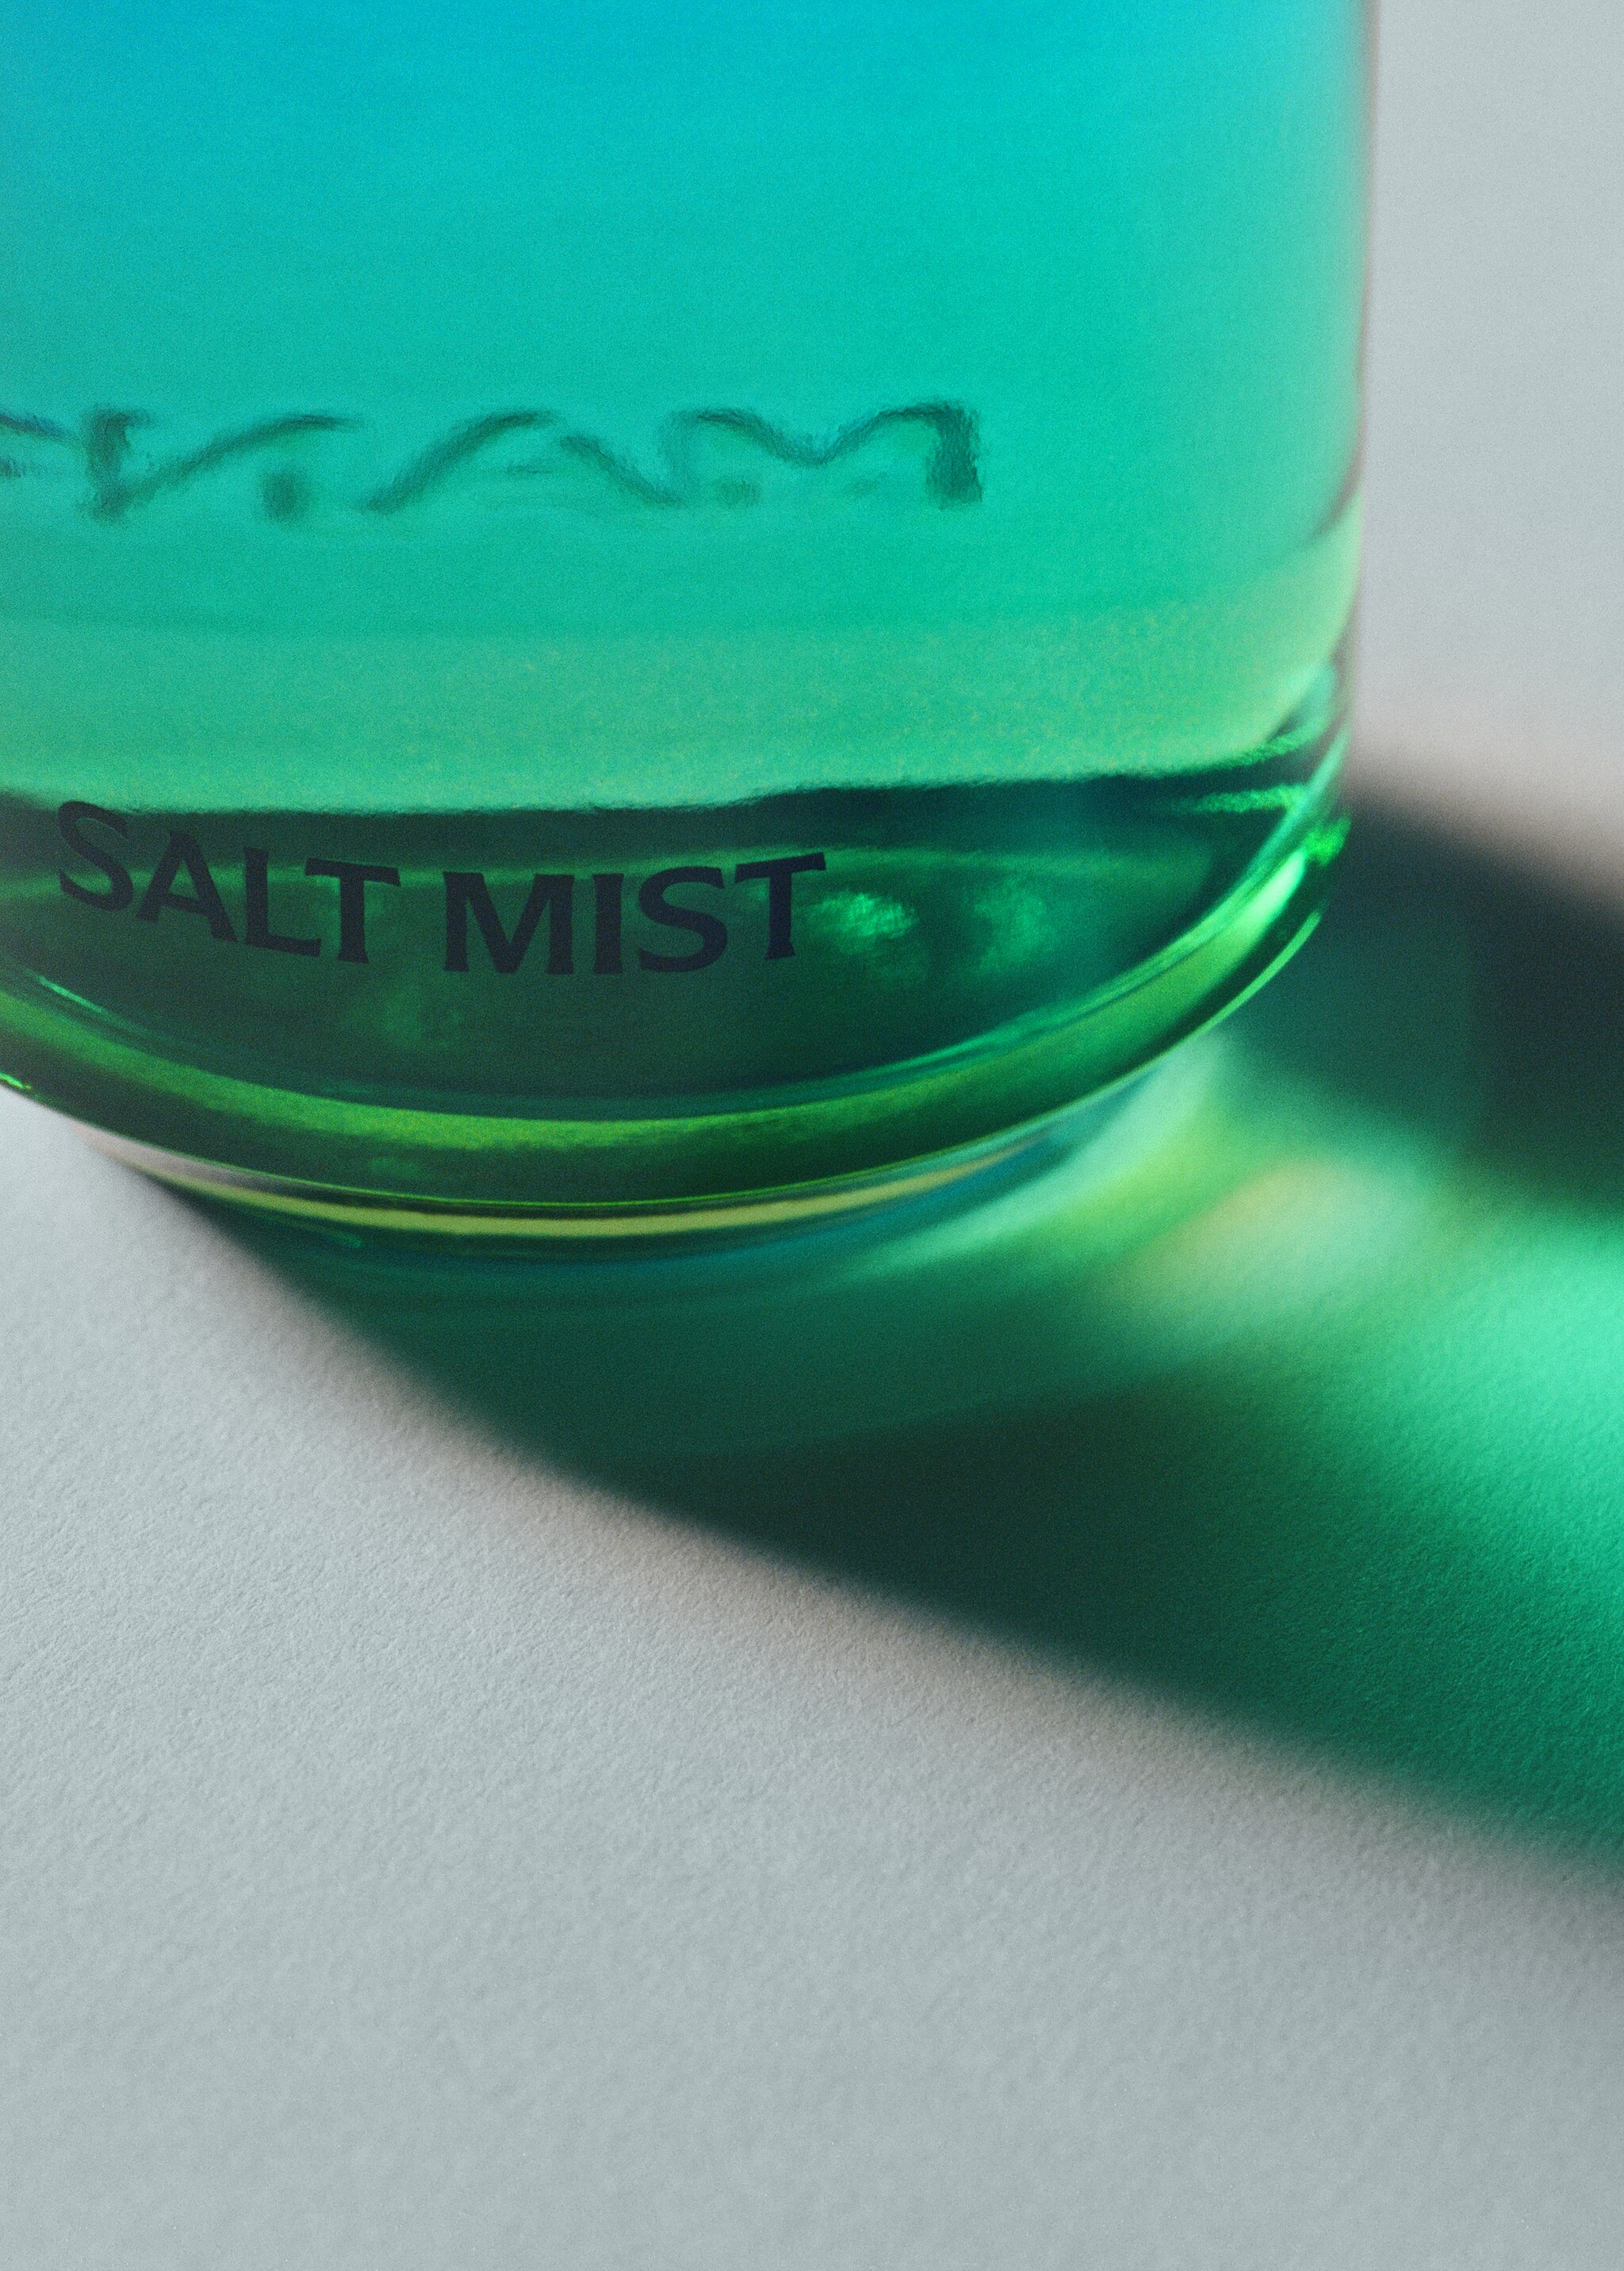 Salt Mist Fragrance 100ml - Details of the article 2